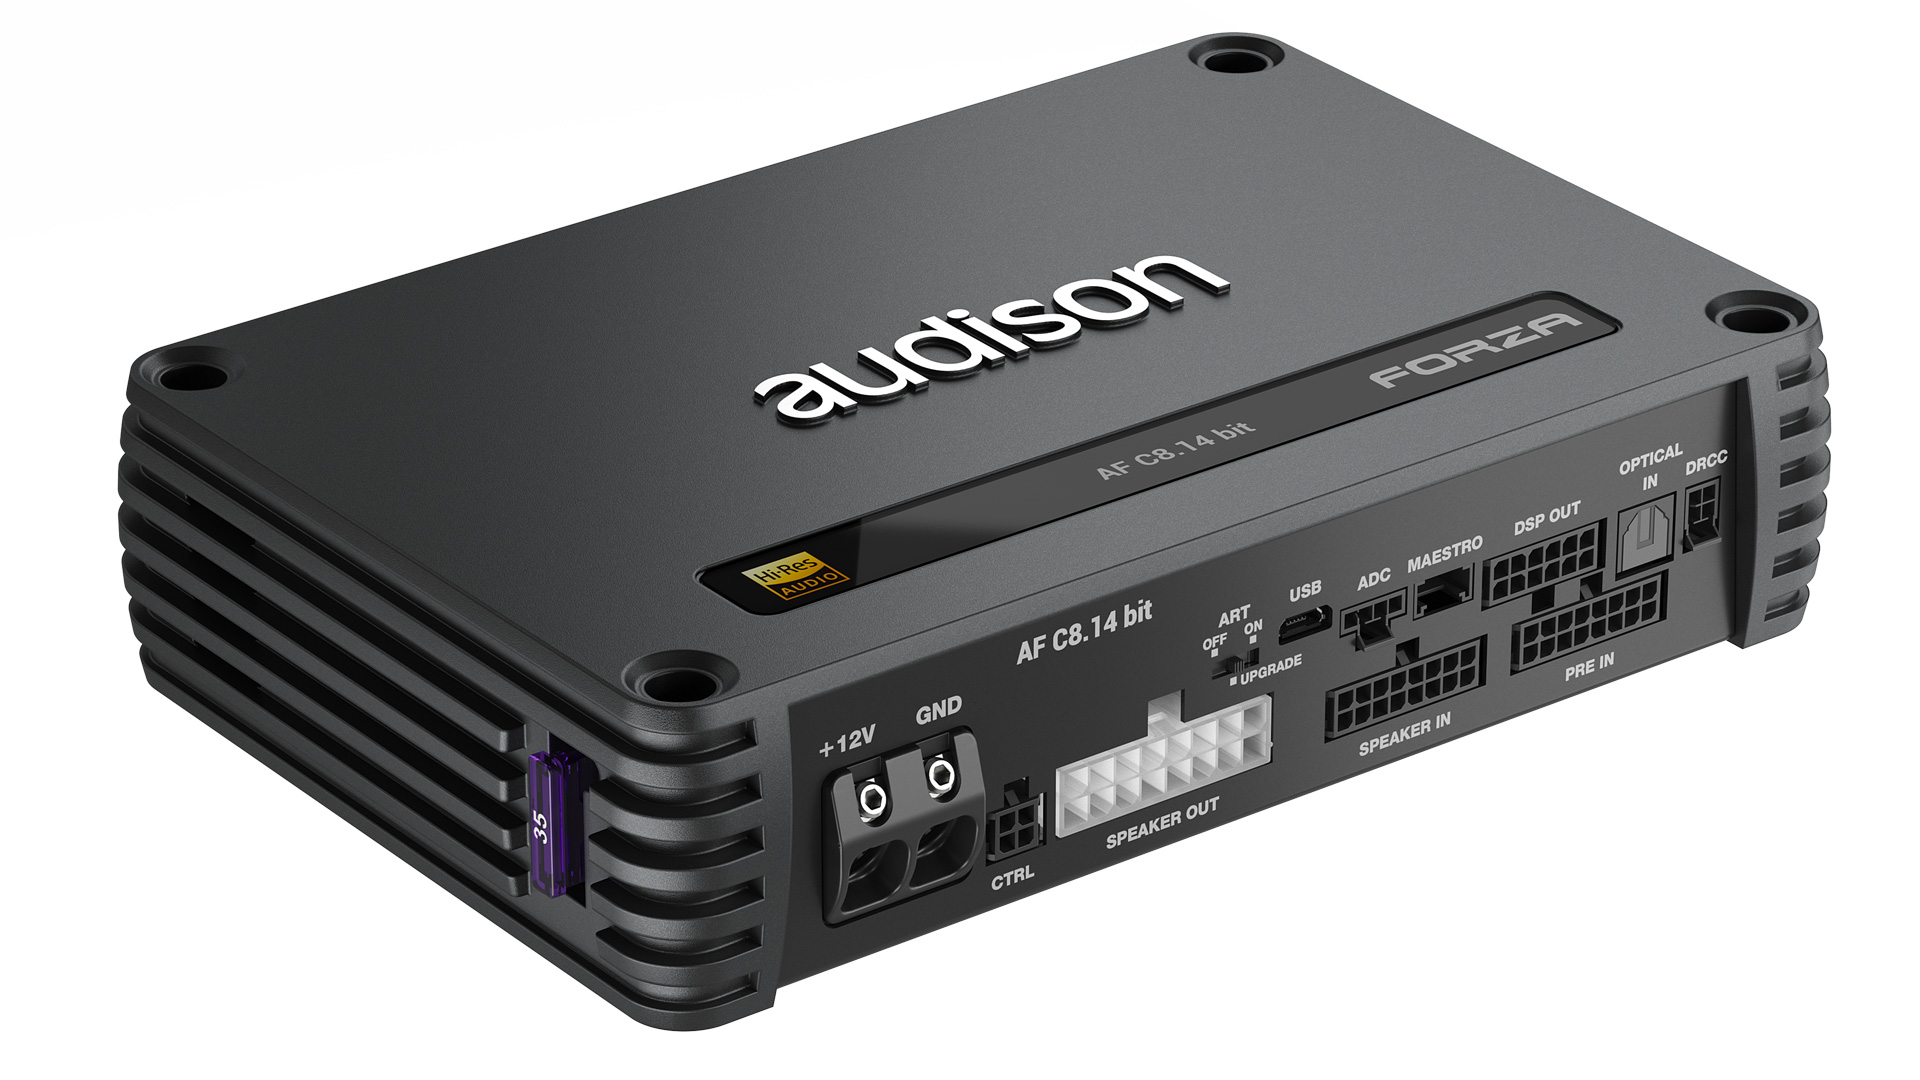 Audison AF C8.14 bit Forza 8 csatornás erősítő hangprocesszorral